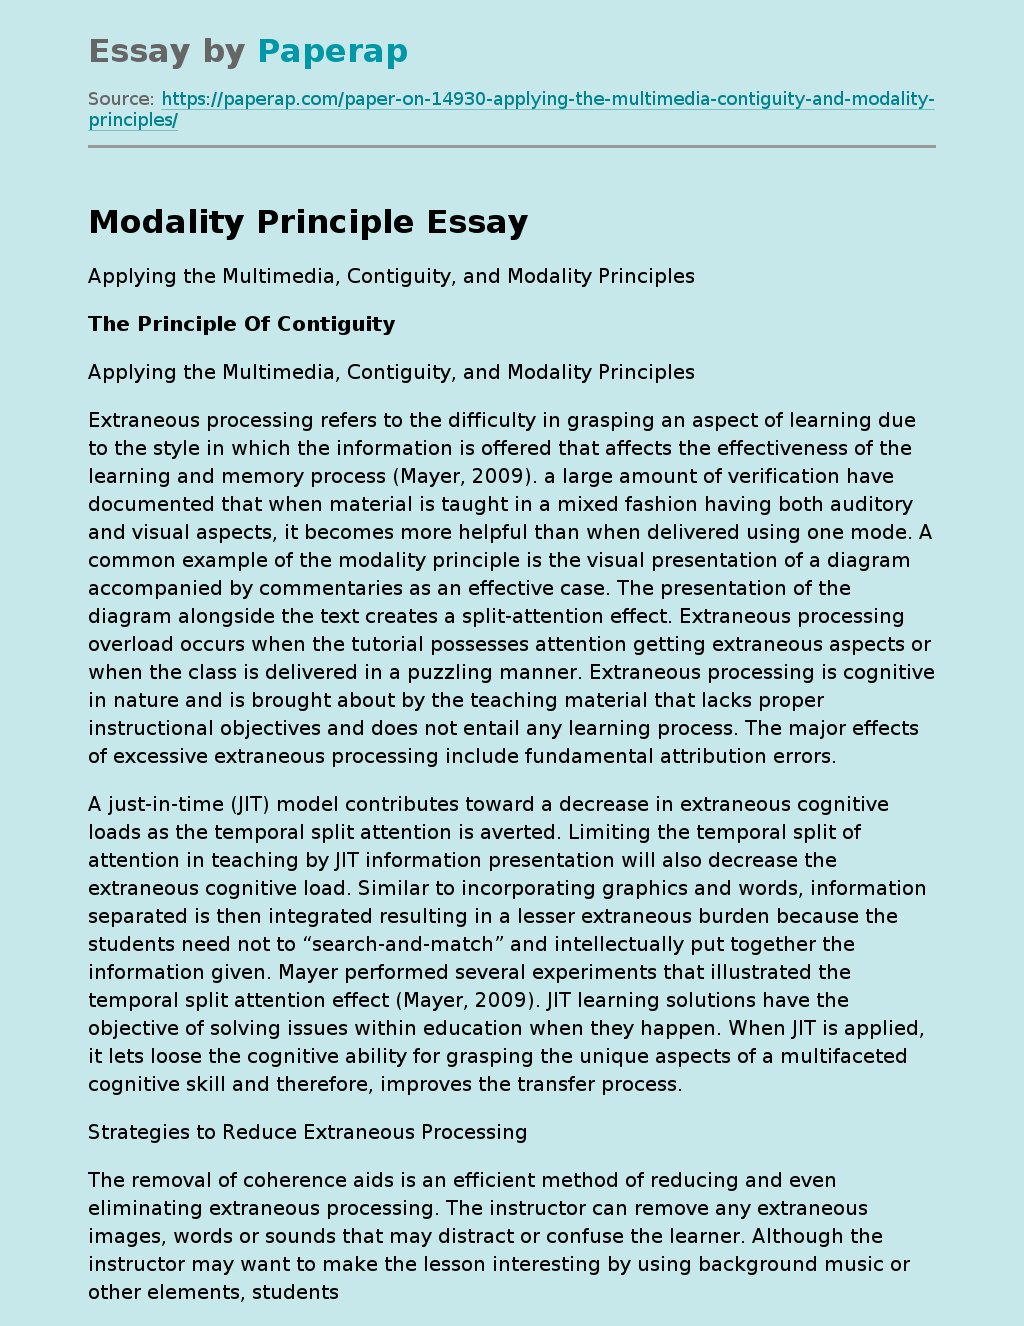 Modality Principle